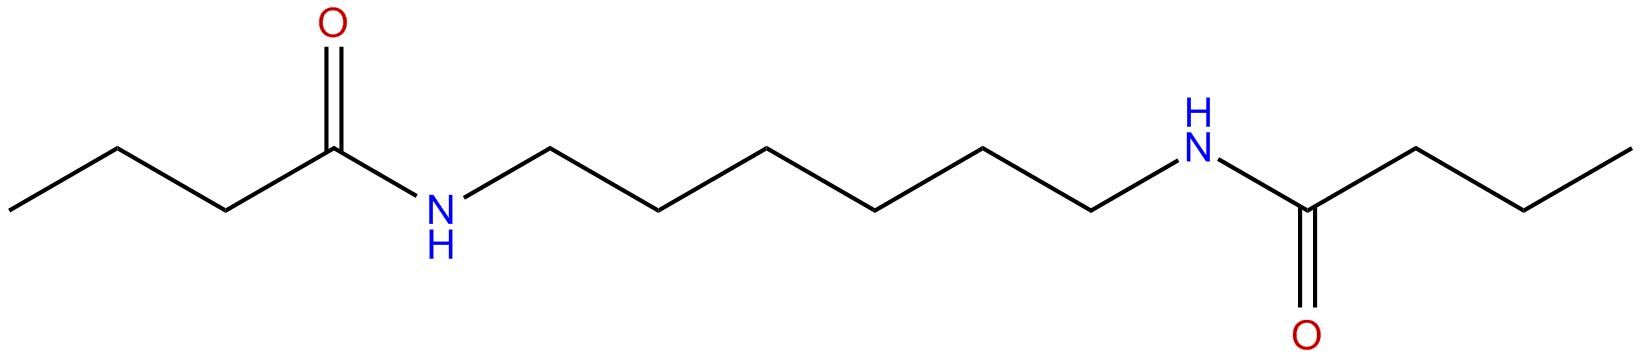 Image of N,N'-1,6-hexanediylbis(butanamide)